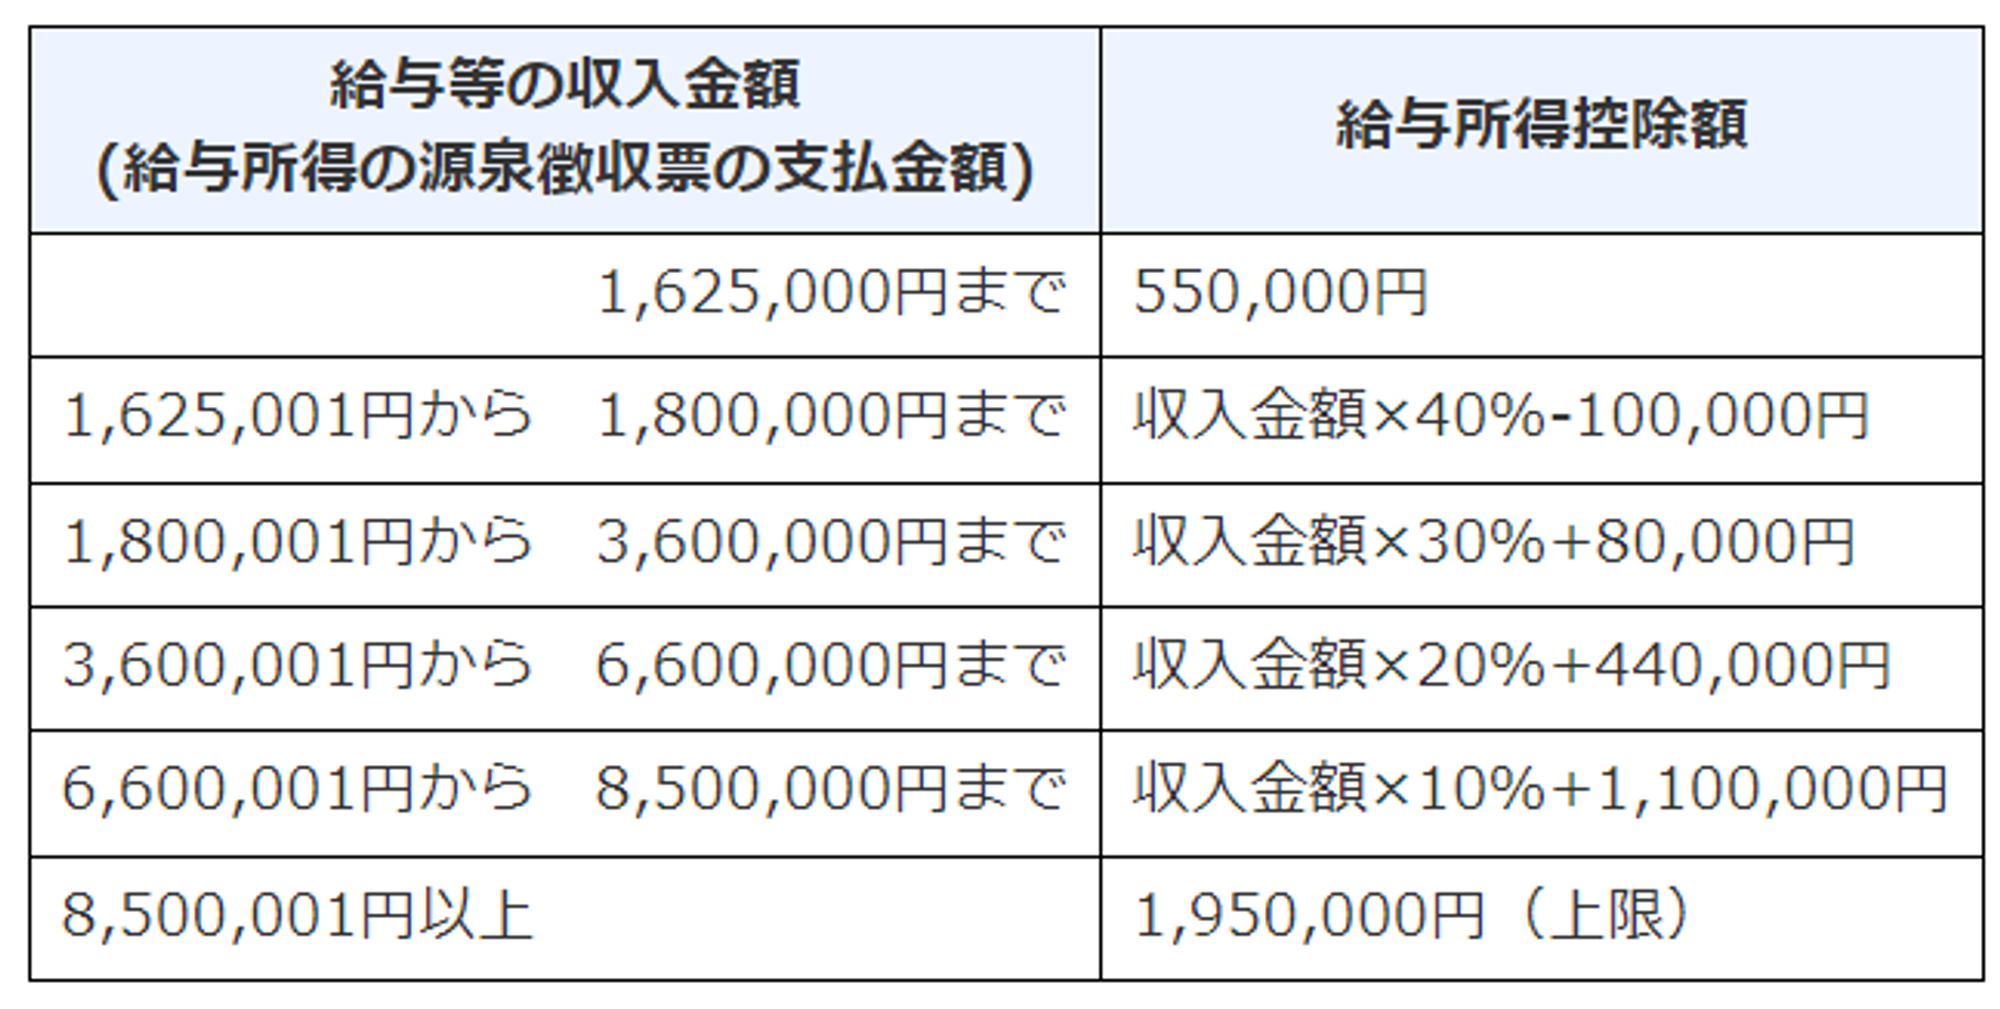 https://www.nta.go.jp/taxes/shiraberu/taxanswer/shotoku/1410.htm